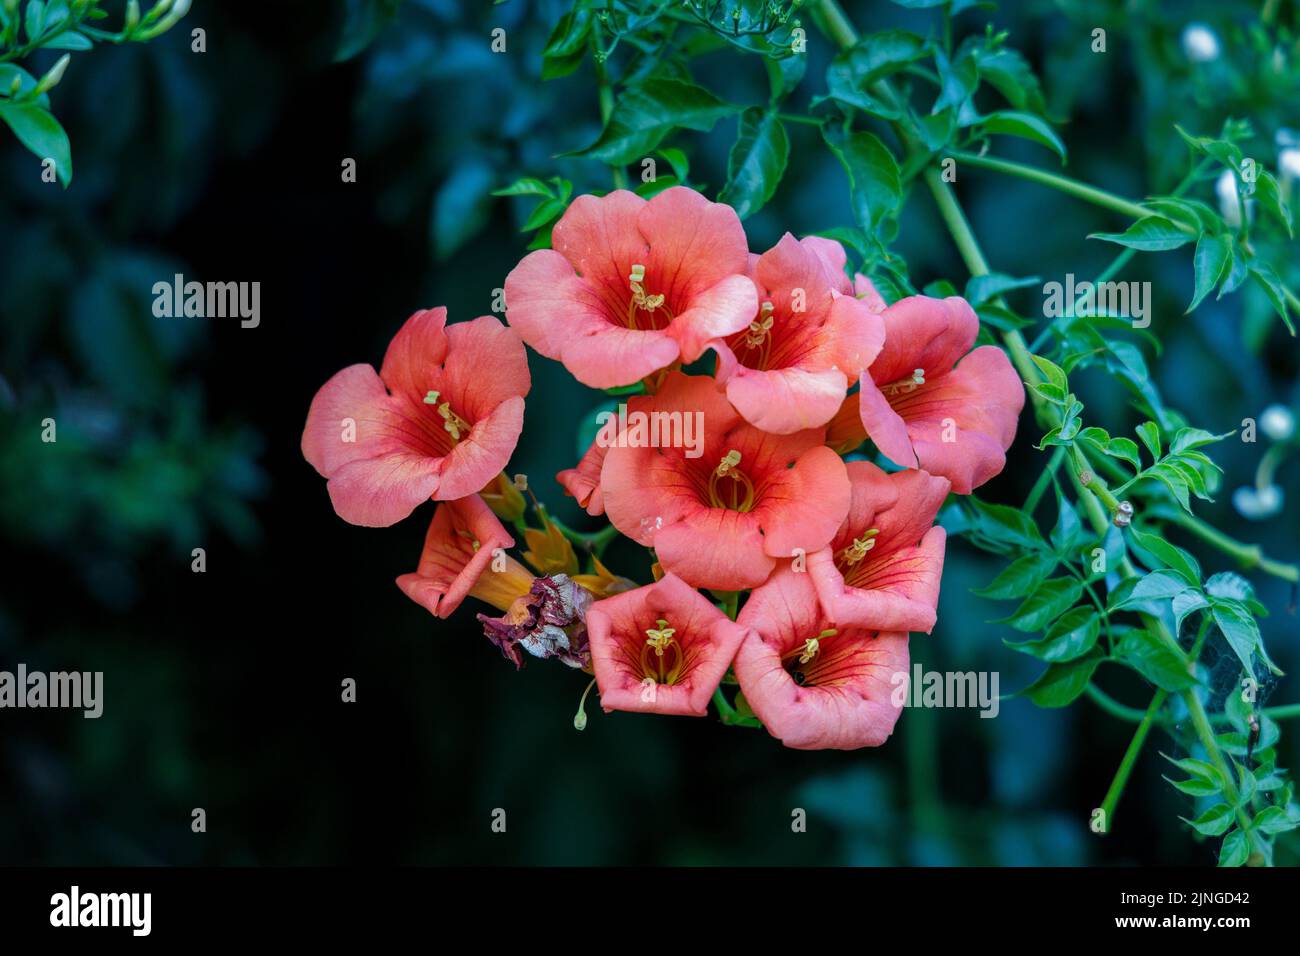 Chinese trumpet vine (Campsis grandiflora) flower on a dark background. Stock Photo